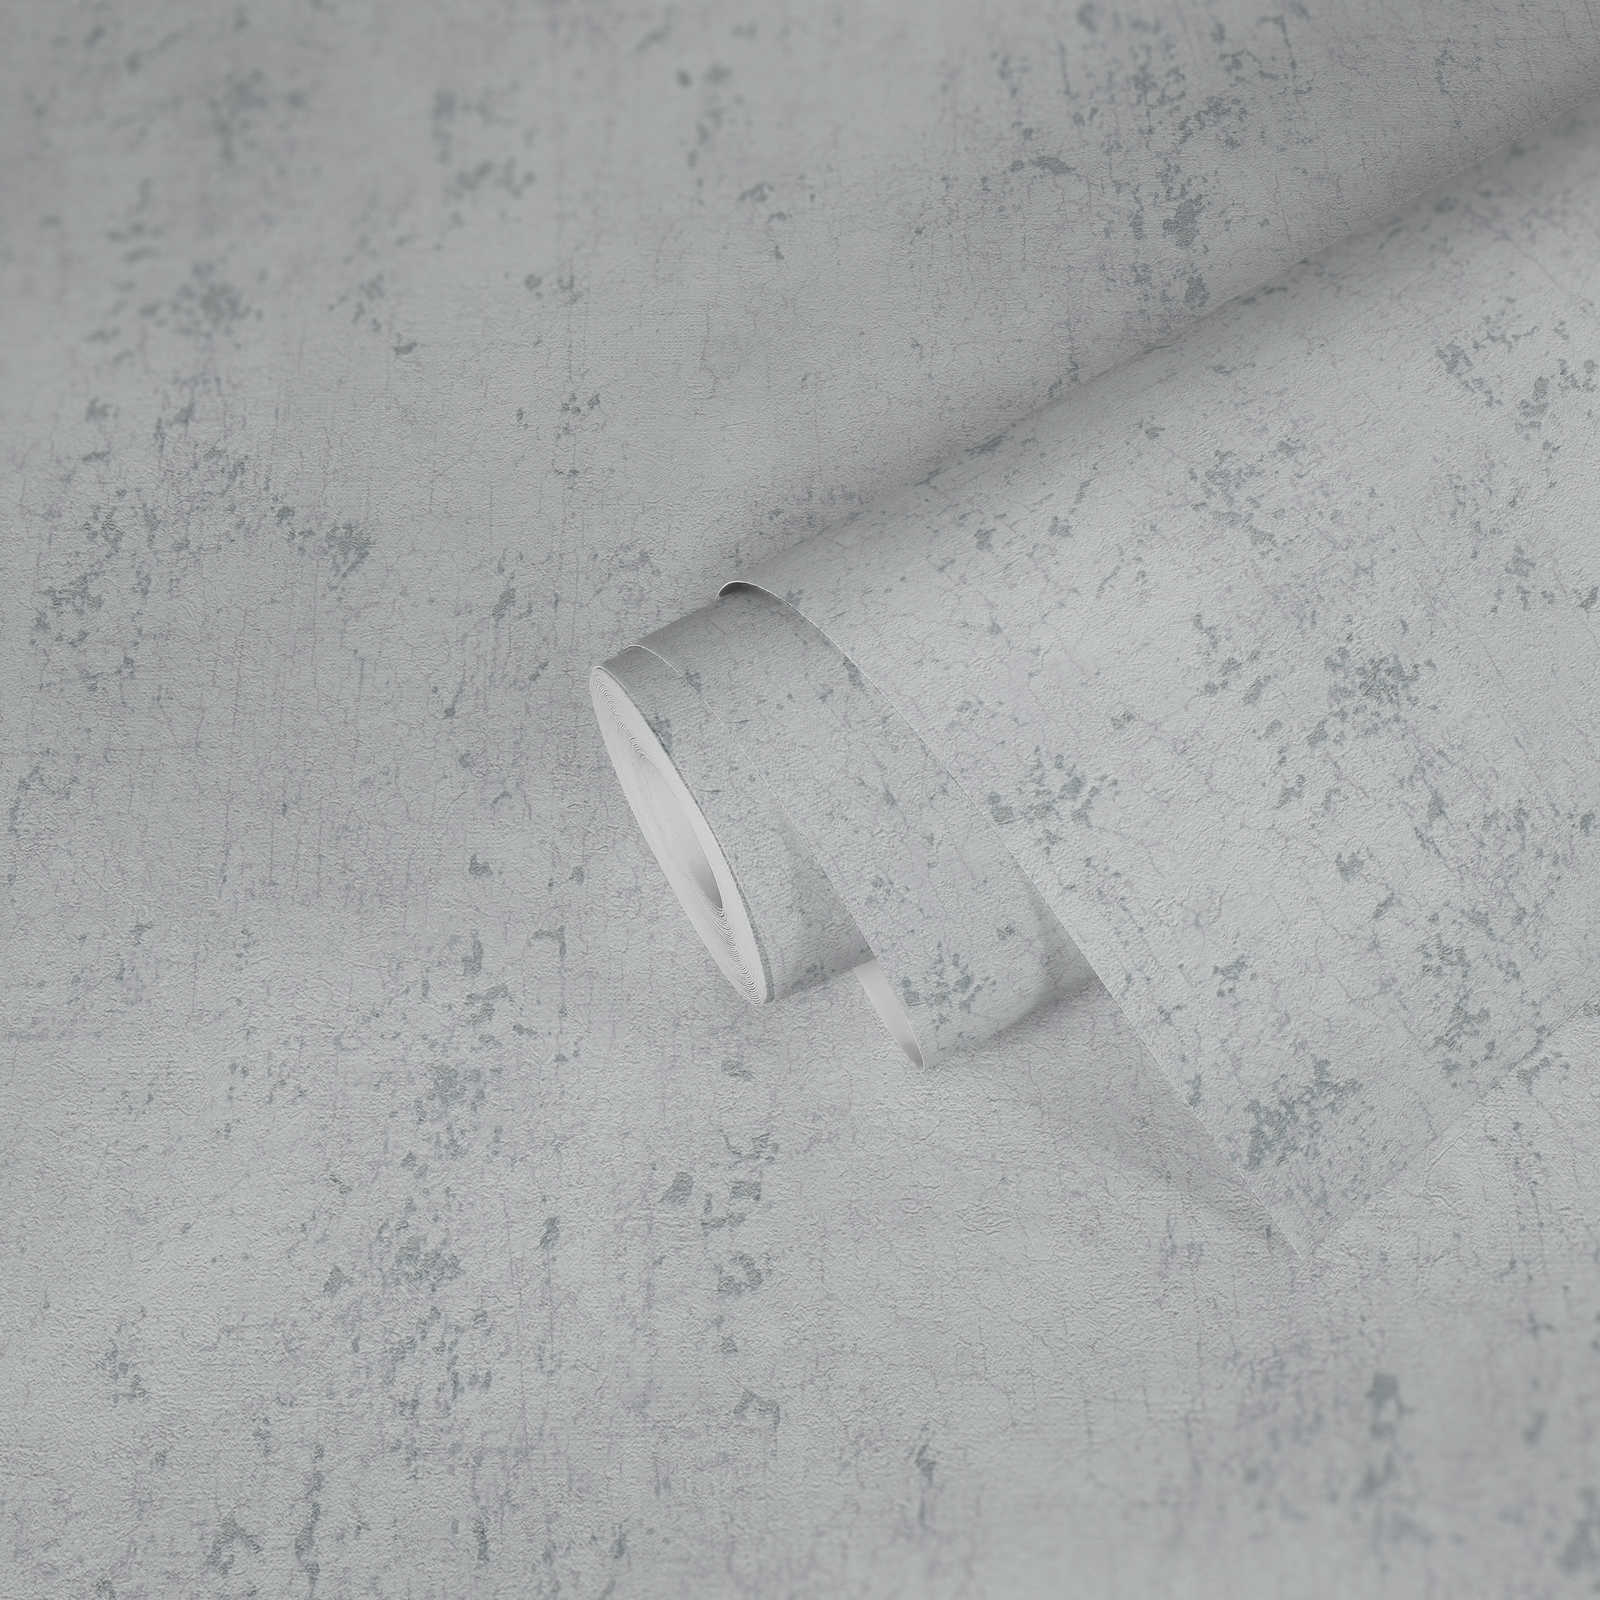             papier peint aspect plâtre gris clair avec argent craquelé - gris, métallique, blanc
        